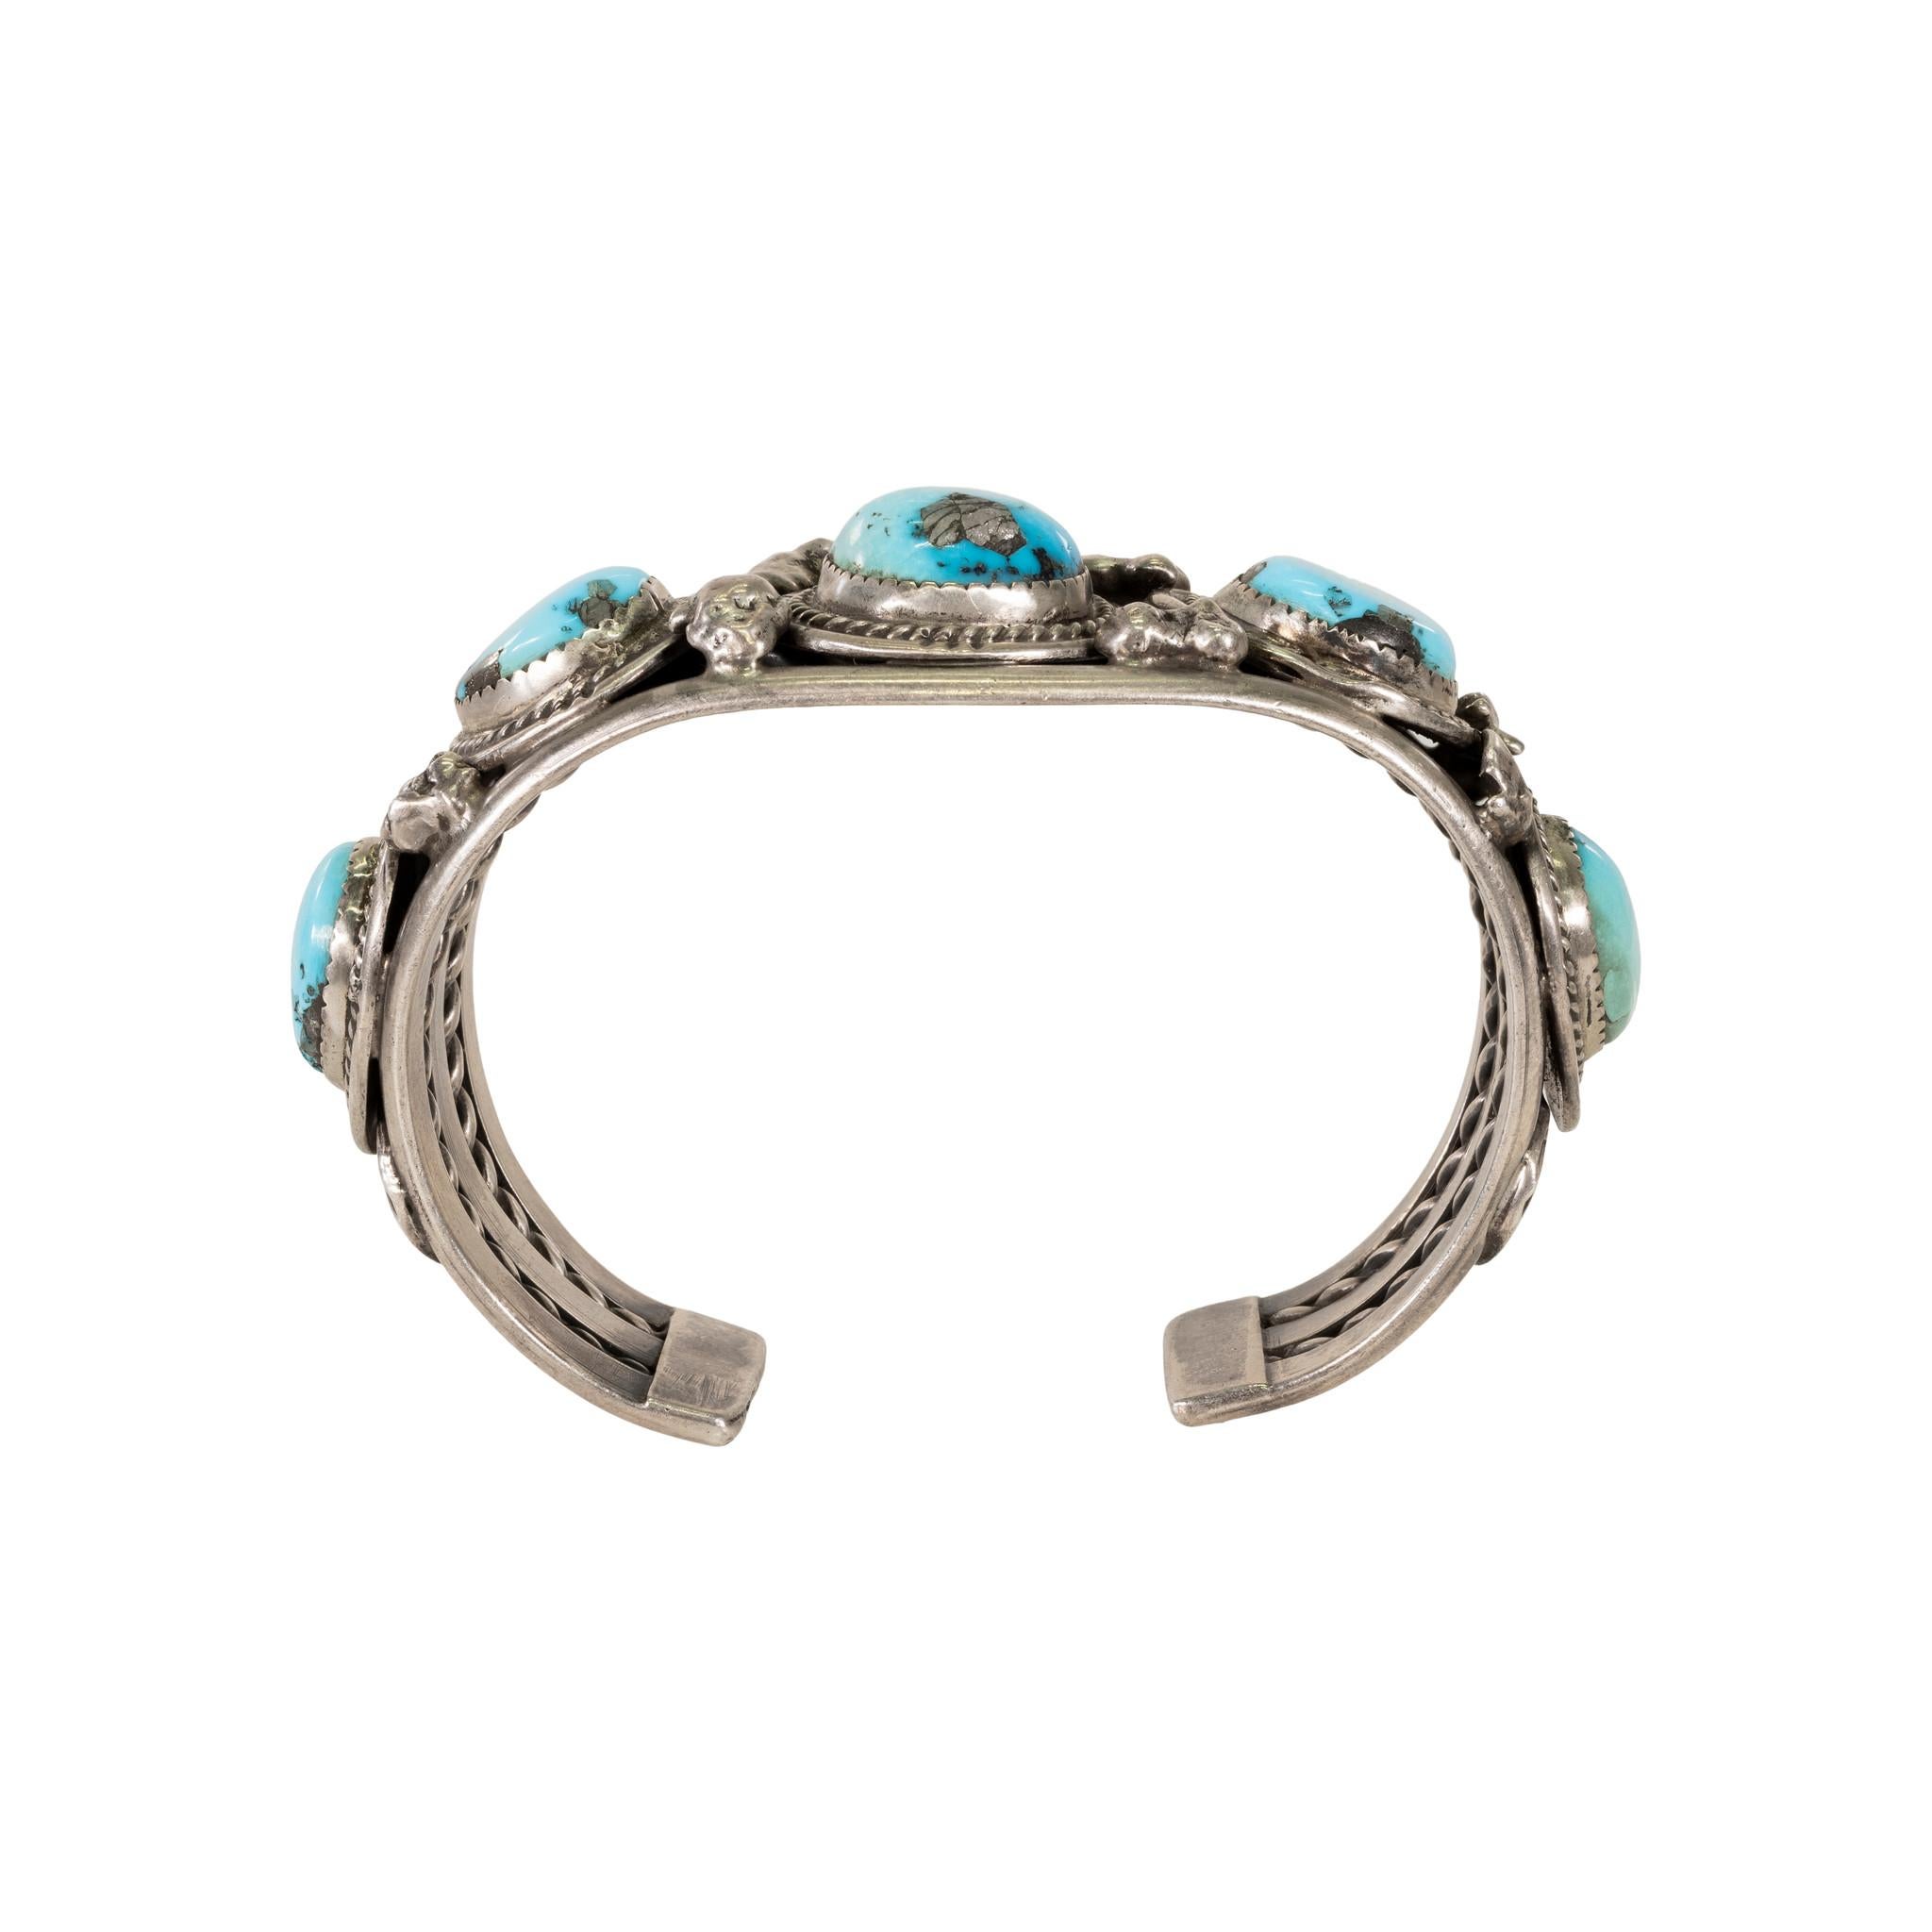 Navajo-Kingman-Türkis-Armband mit fünf Nuggets, umgeben von einem gedrehten Seilrand. Türkis ist eine atemberaubende hellblaue Farbe von hervorragender Qualität. 

ZEITRAUM: Nach 1950
URSPRUNG: Navajo, Südwesten
GRÖSSE: 7